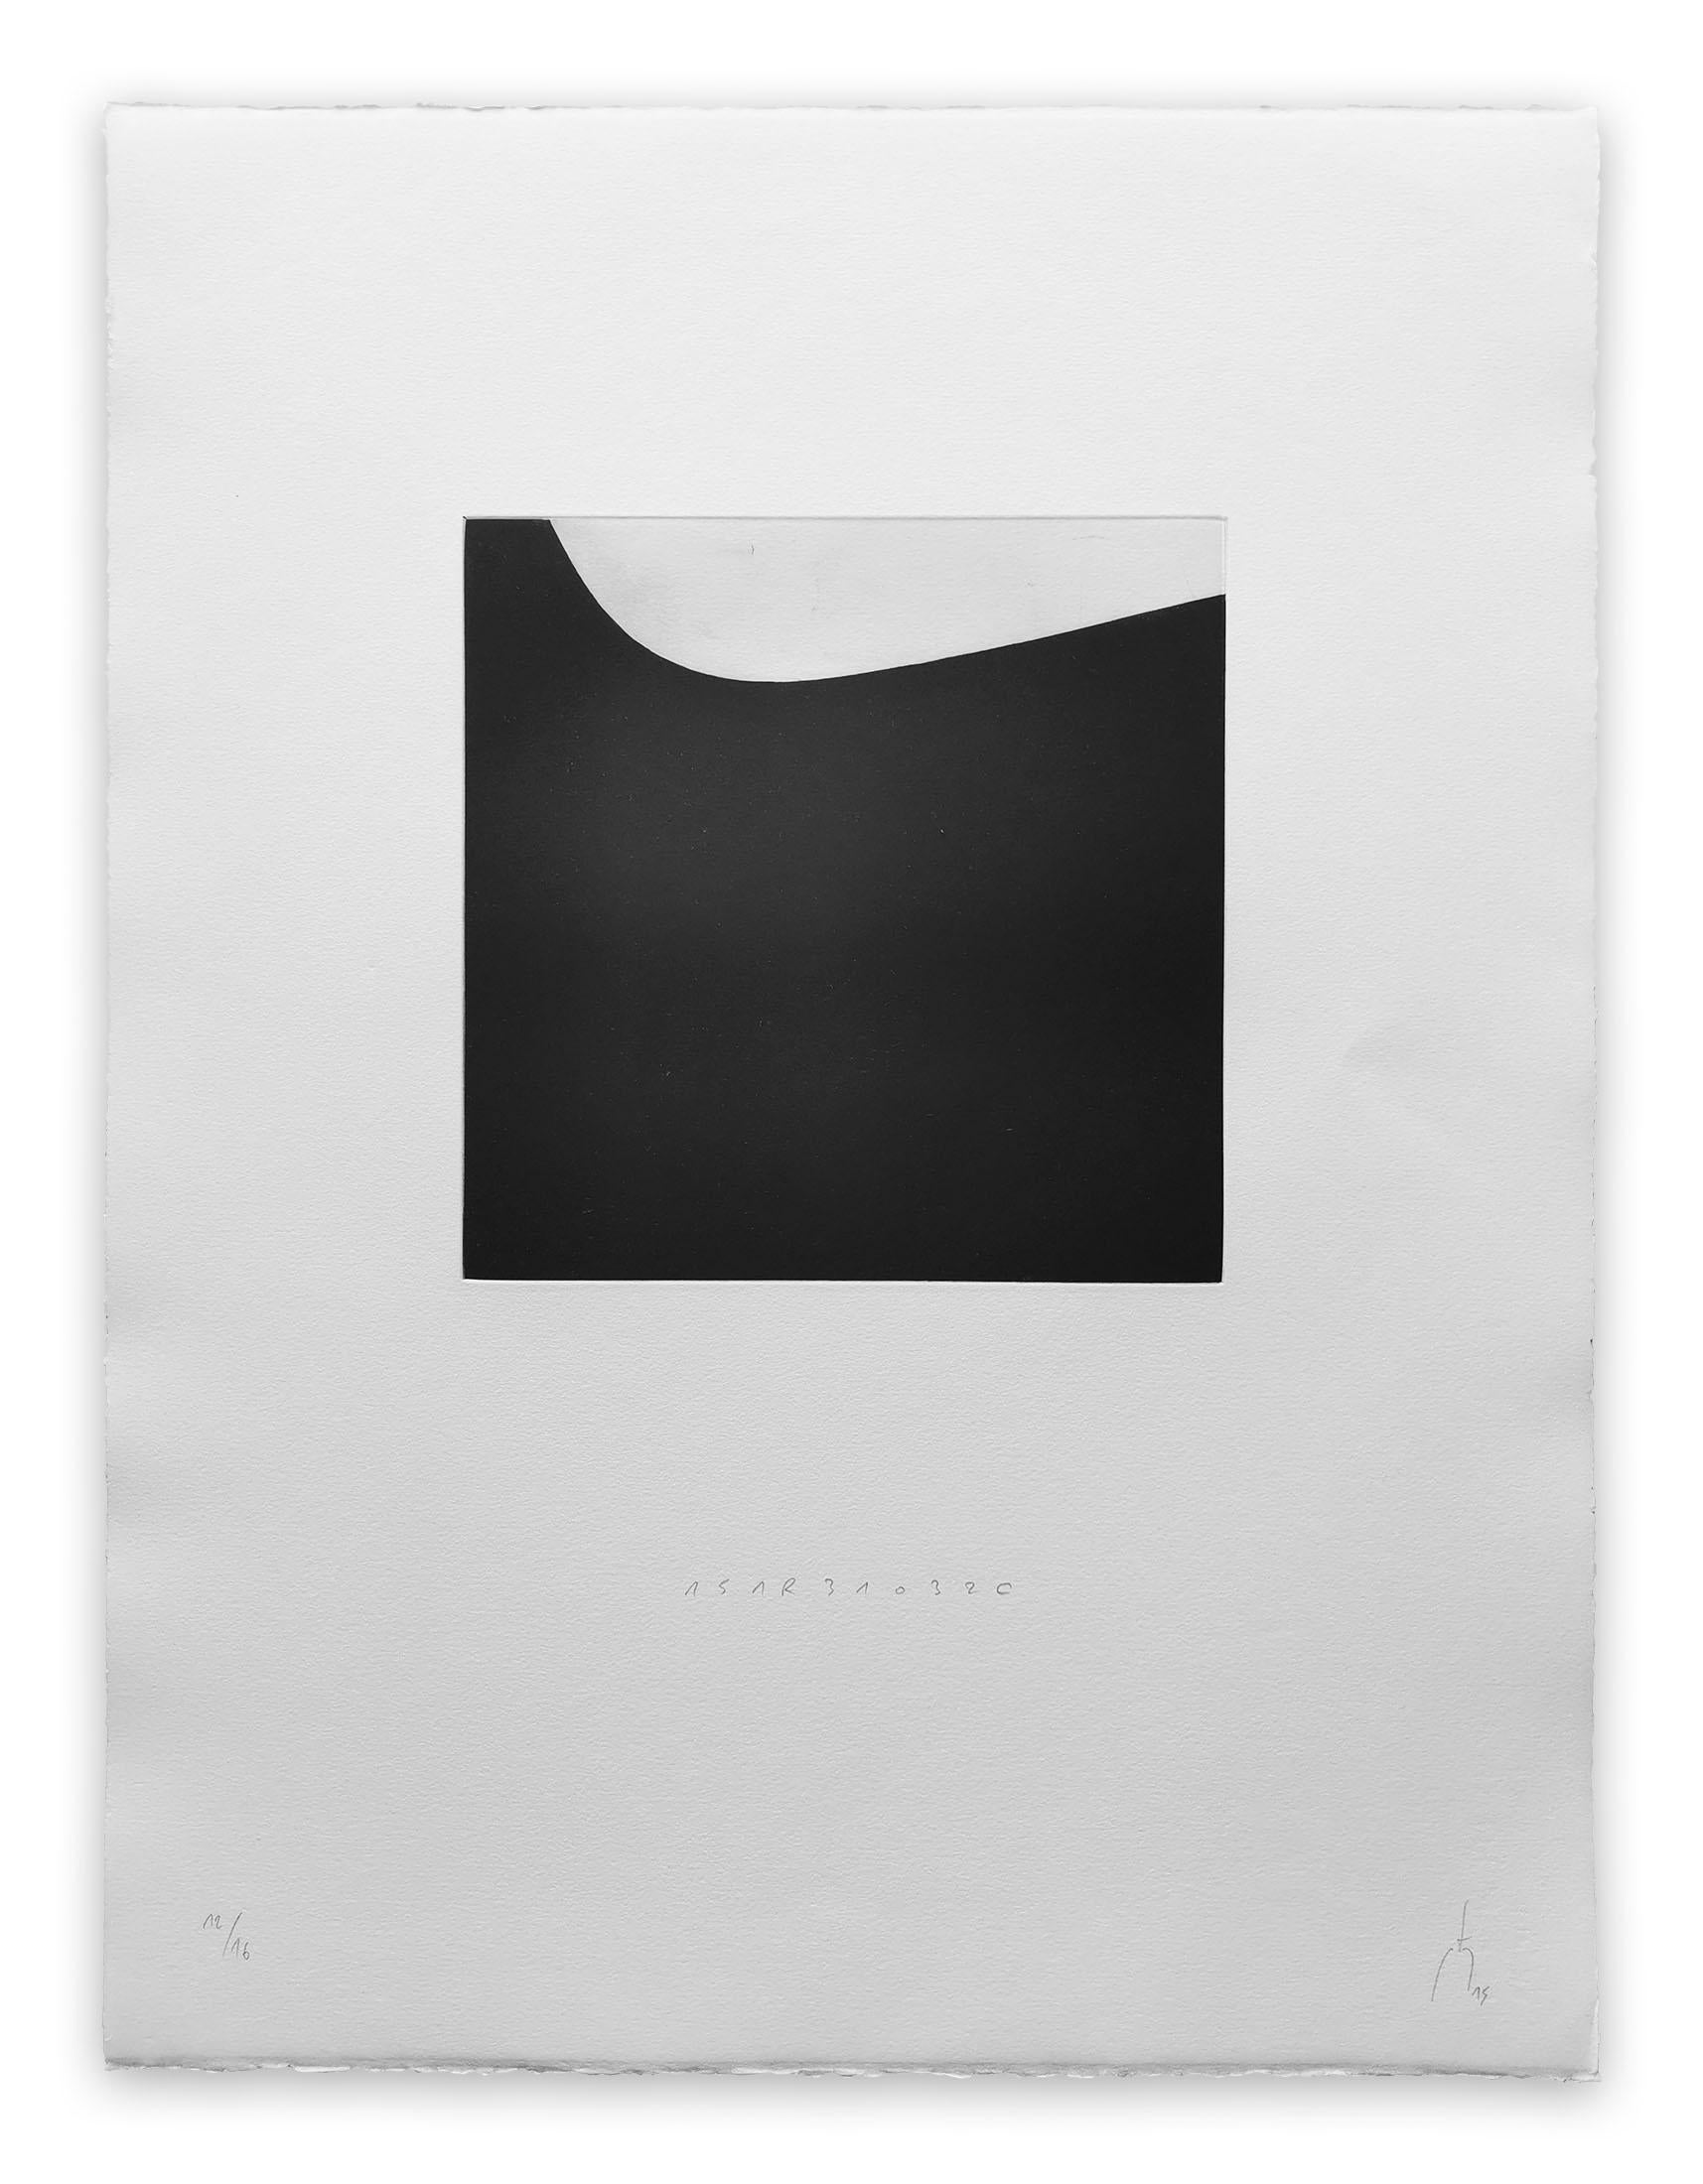 Kupferstichdruck auf BFK Rives Papier 250g - ungerahmt.

Dieses Kunstwerk wird als Triptychon verkauft. Jeder Druck hat die Maße 65 x 50 cm/25,5 x 19,6 Zoll.

Ausgabe: 12/16

Seit 2010 hat Pierre Muckensturm die Druckgrafik in sein Werk